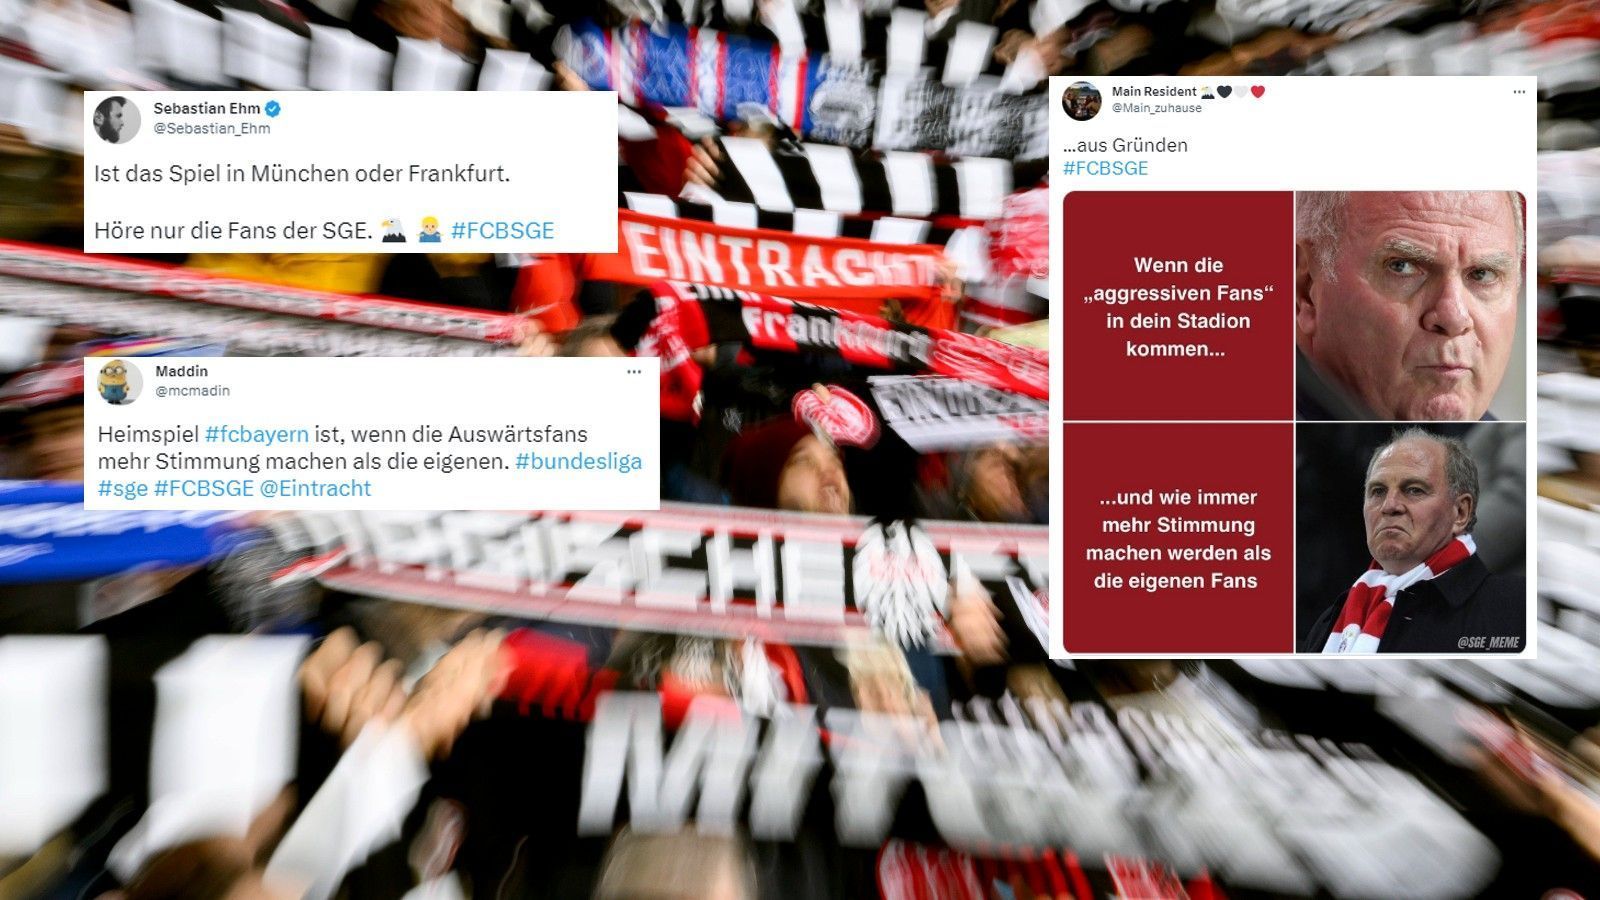 
                <strong>Bayern-Fans machen sich zum Gespött</strong><br>
                Die Bayern-Fans bekommen bei Twitter mal wieder eine ordentliche Breitseite. Weil in der Münchner Allianz Arena vor allem die Frankfurter Fans zu hören sind, hagelt es für den stummen FCB-Anhang Spott. Ob Uli Hoeneß sich ärgert?
              